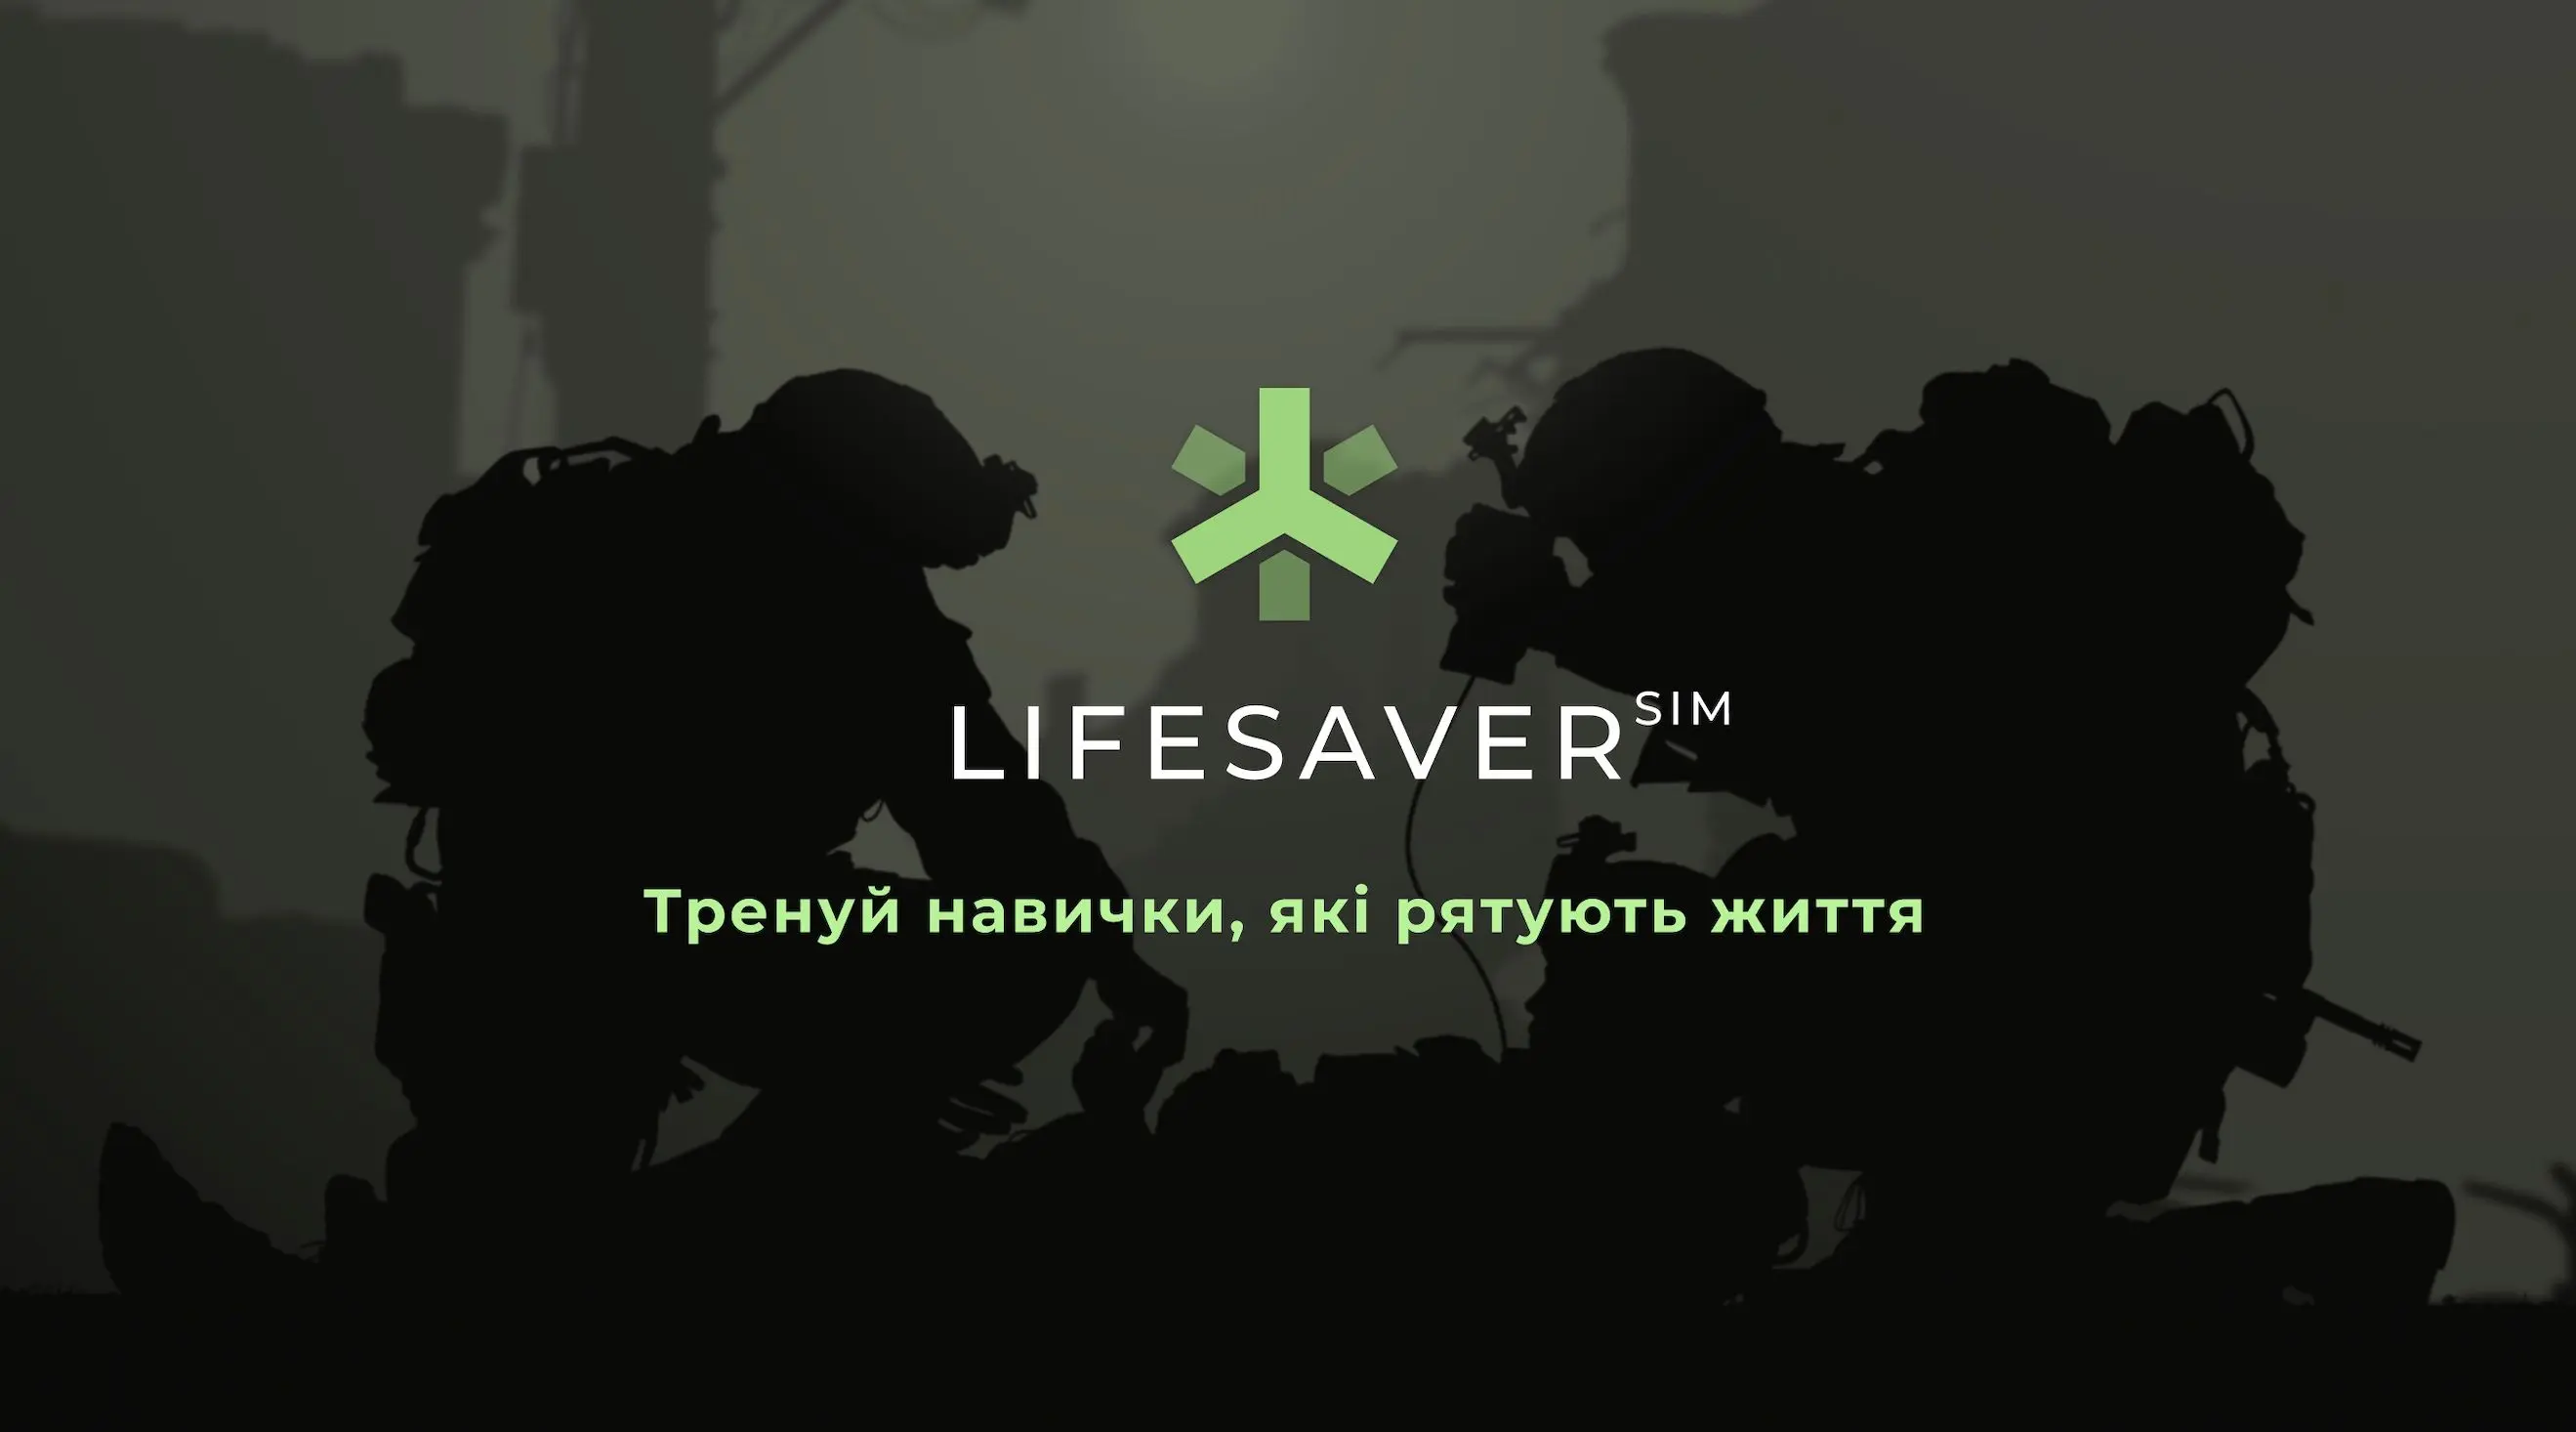 Українці розробили перший ігровий симулятор з тактичної медицини LifesaverSIM. Де його можна завантажити?